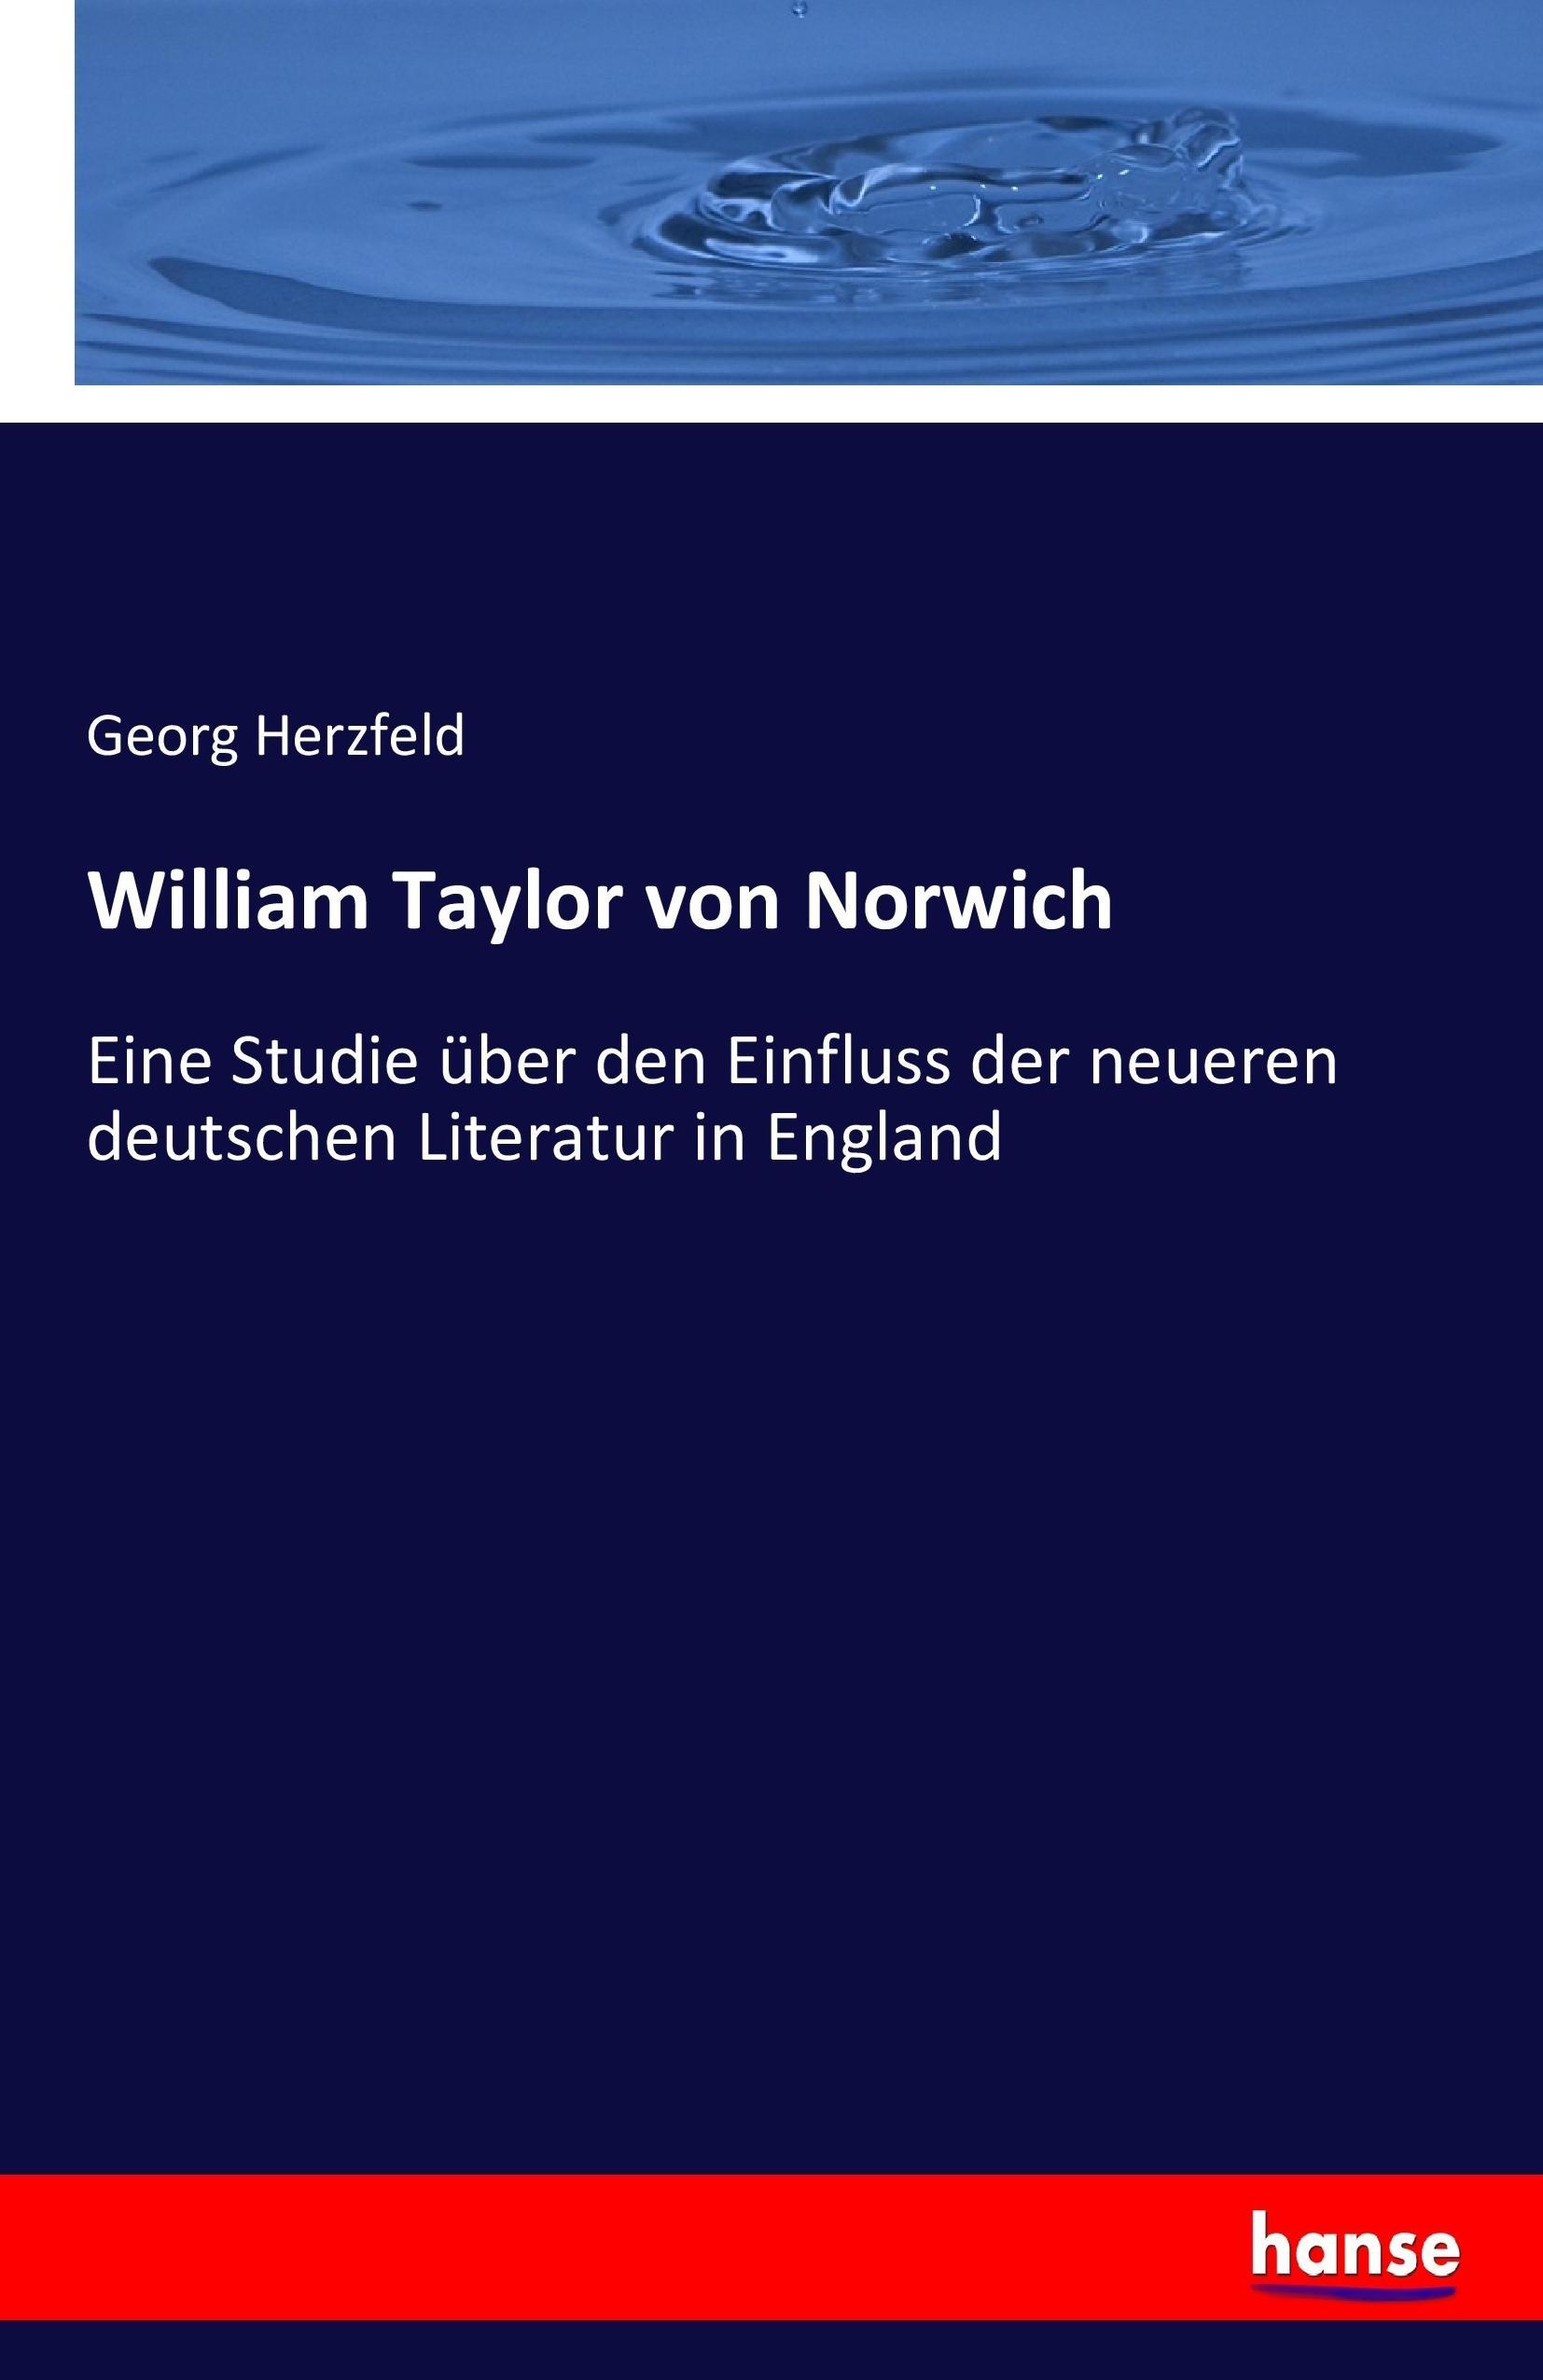 William Taylor von Norwich | Eine Studie über den Einfluss der neueren deutschen Literatur in England | Georg Herzfeld | Taschenbuch | Paperback | 84 S. | Deutsch | 2017 | hansebooks - Herzfeld, Georg